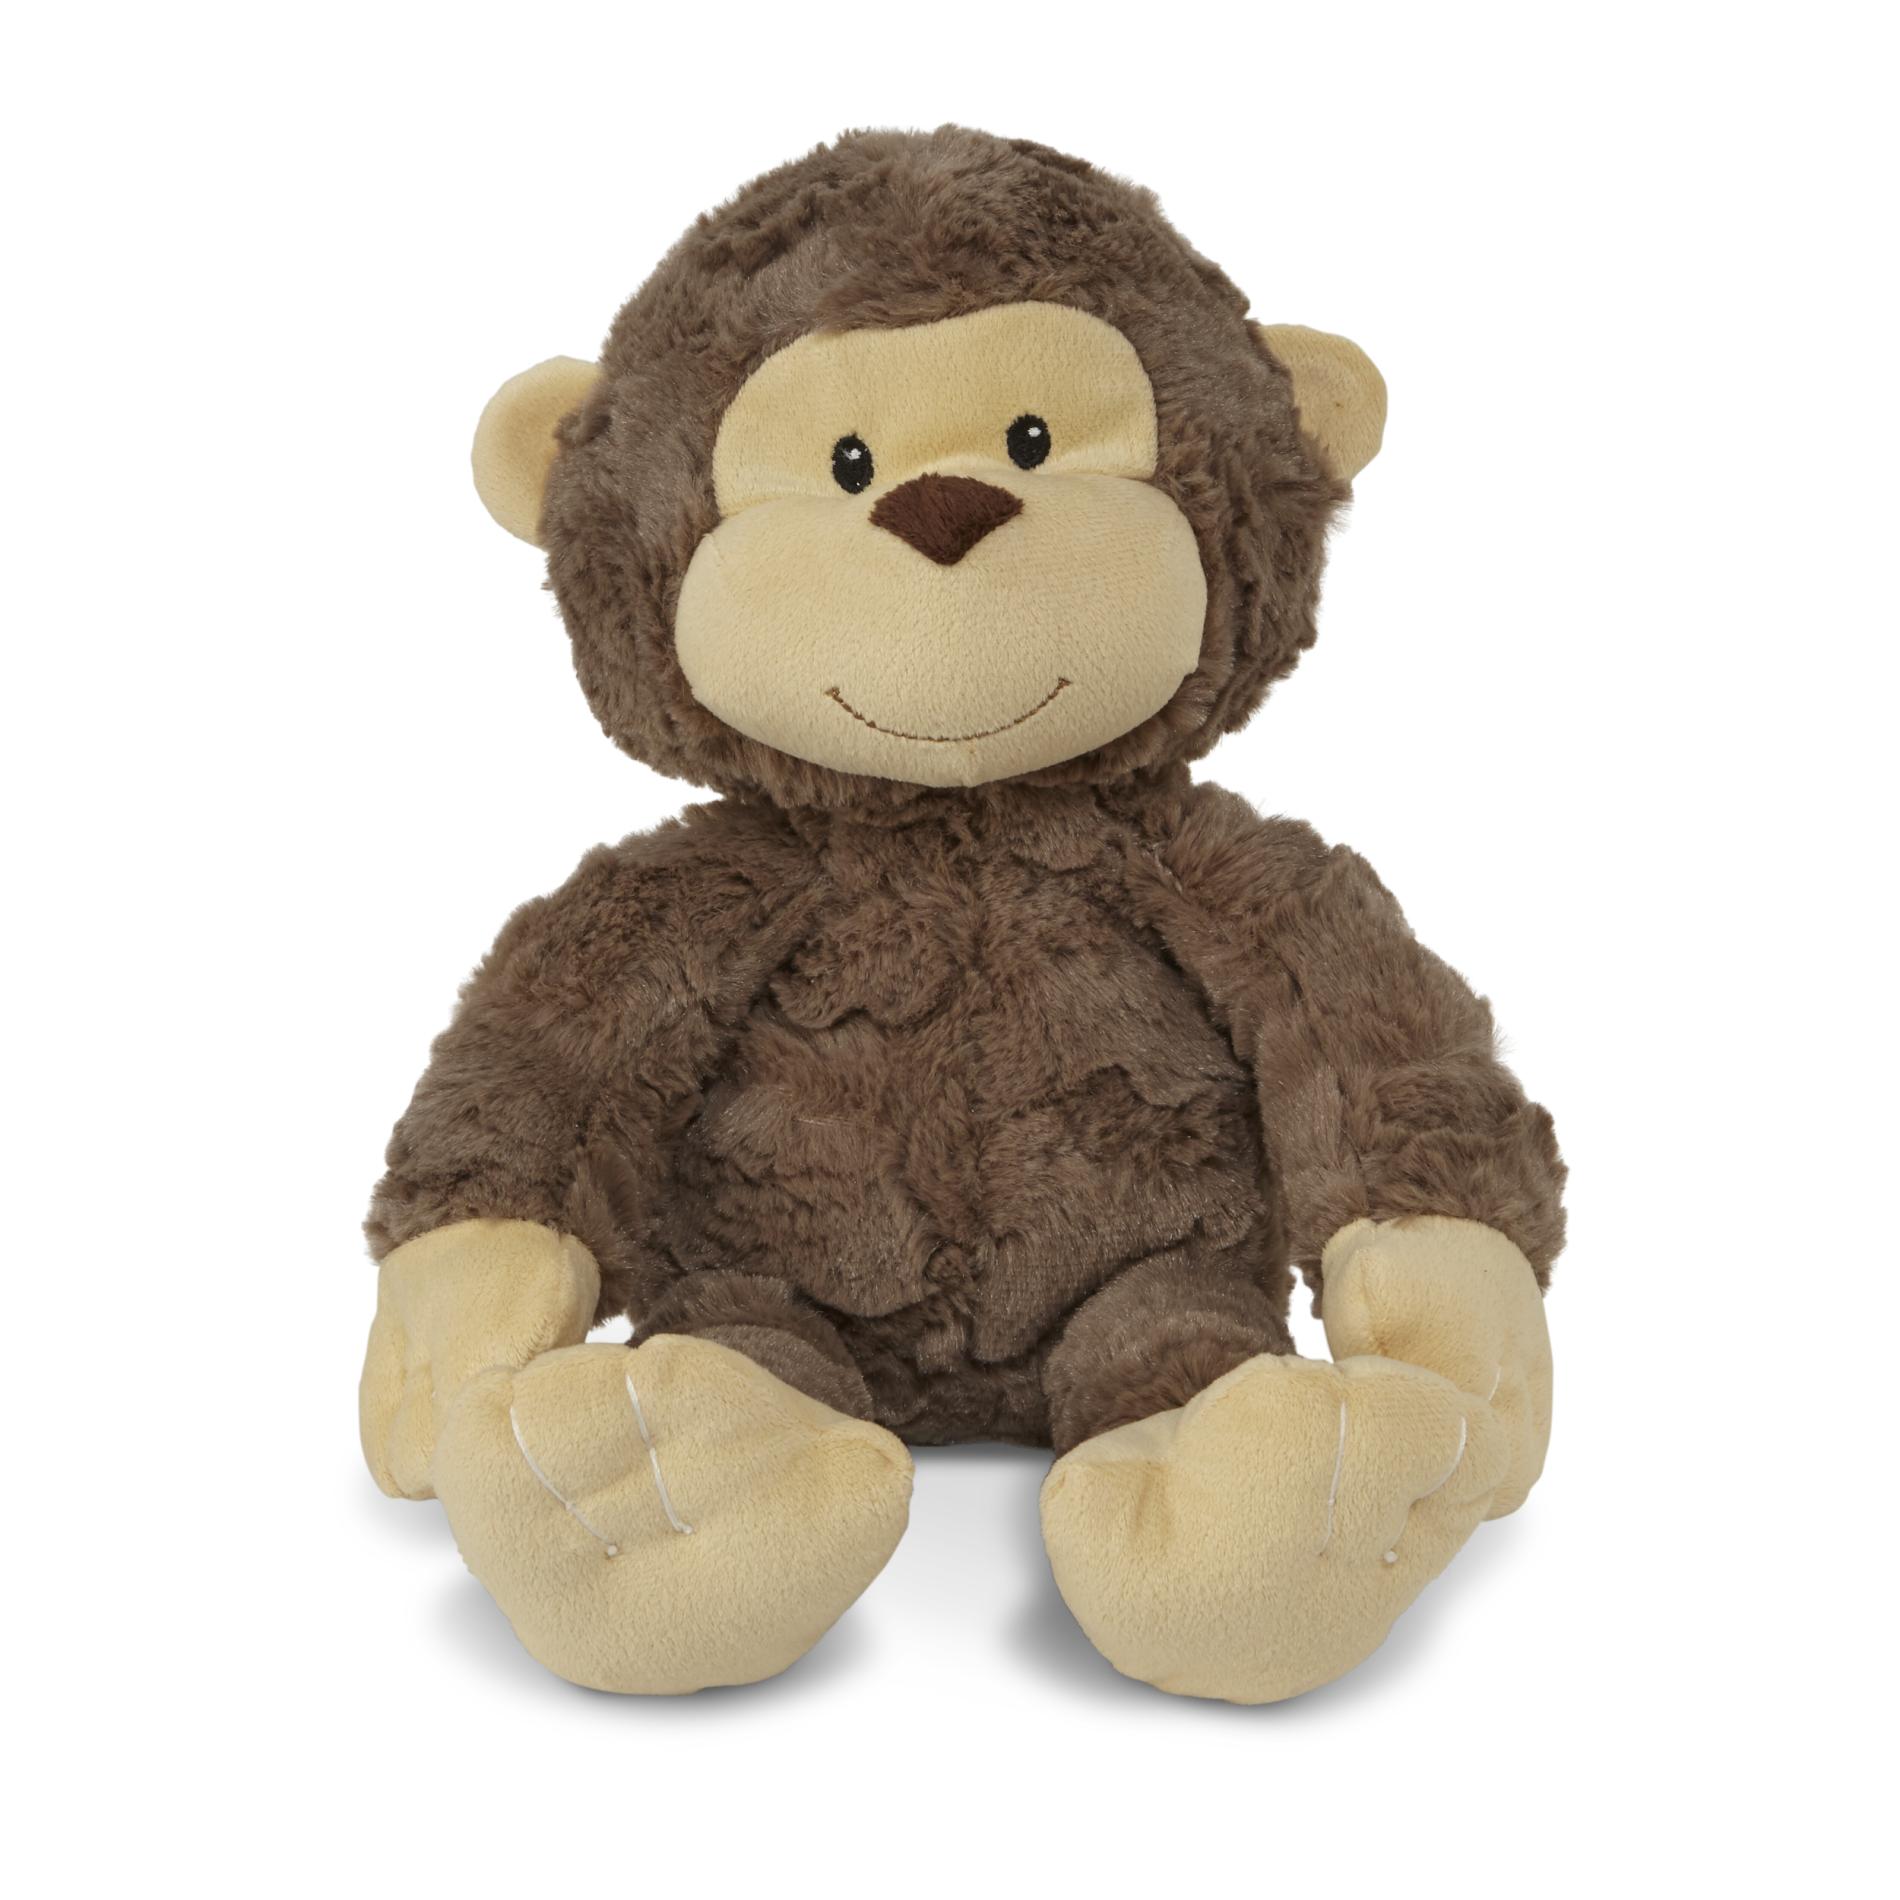 Infants' Stuffed Animal - Monkey